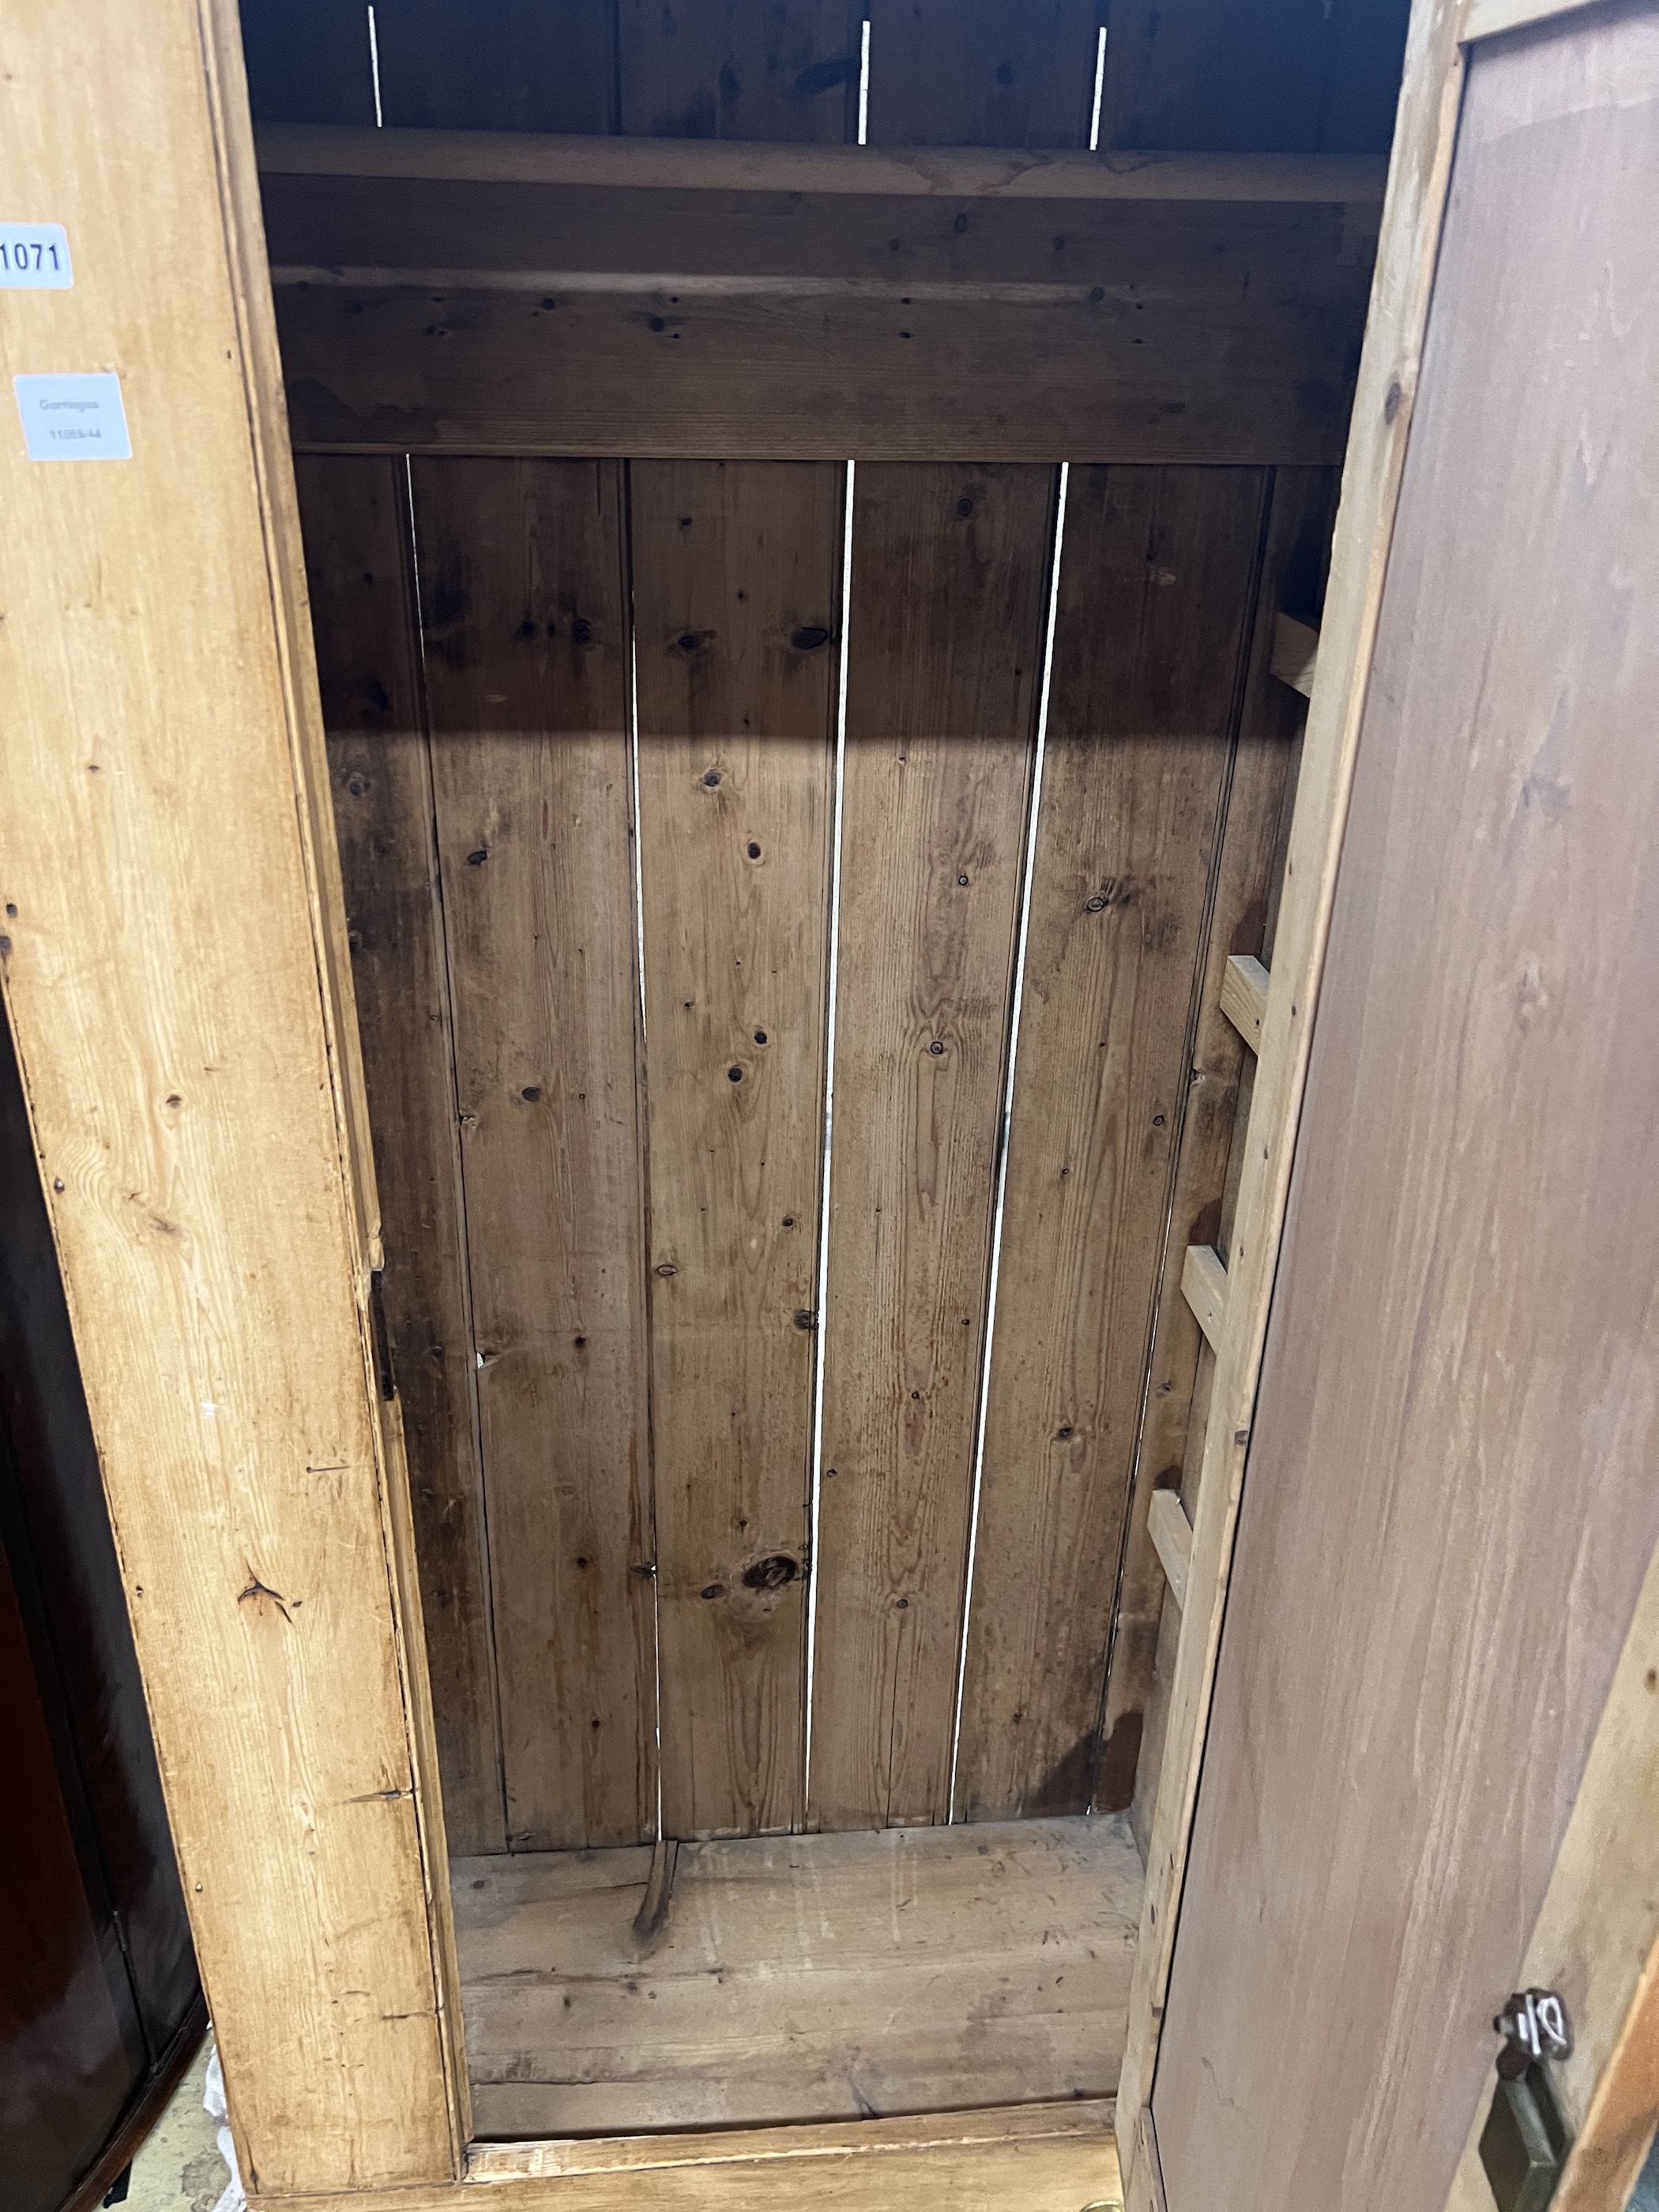 A Victorian pine single door wardrobe, width 86cm, depth 50cm, height 179cm